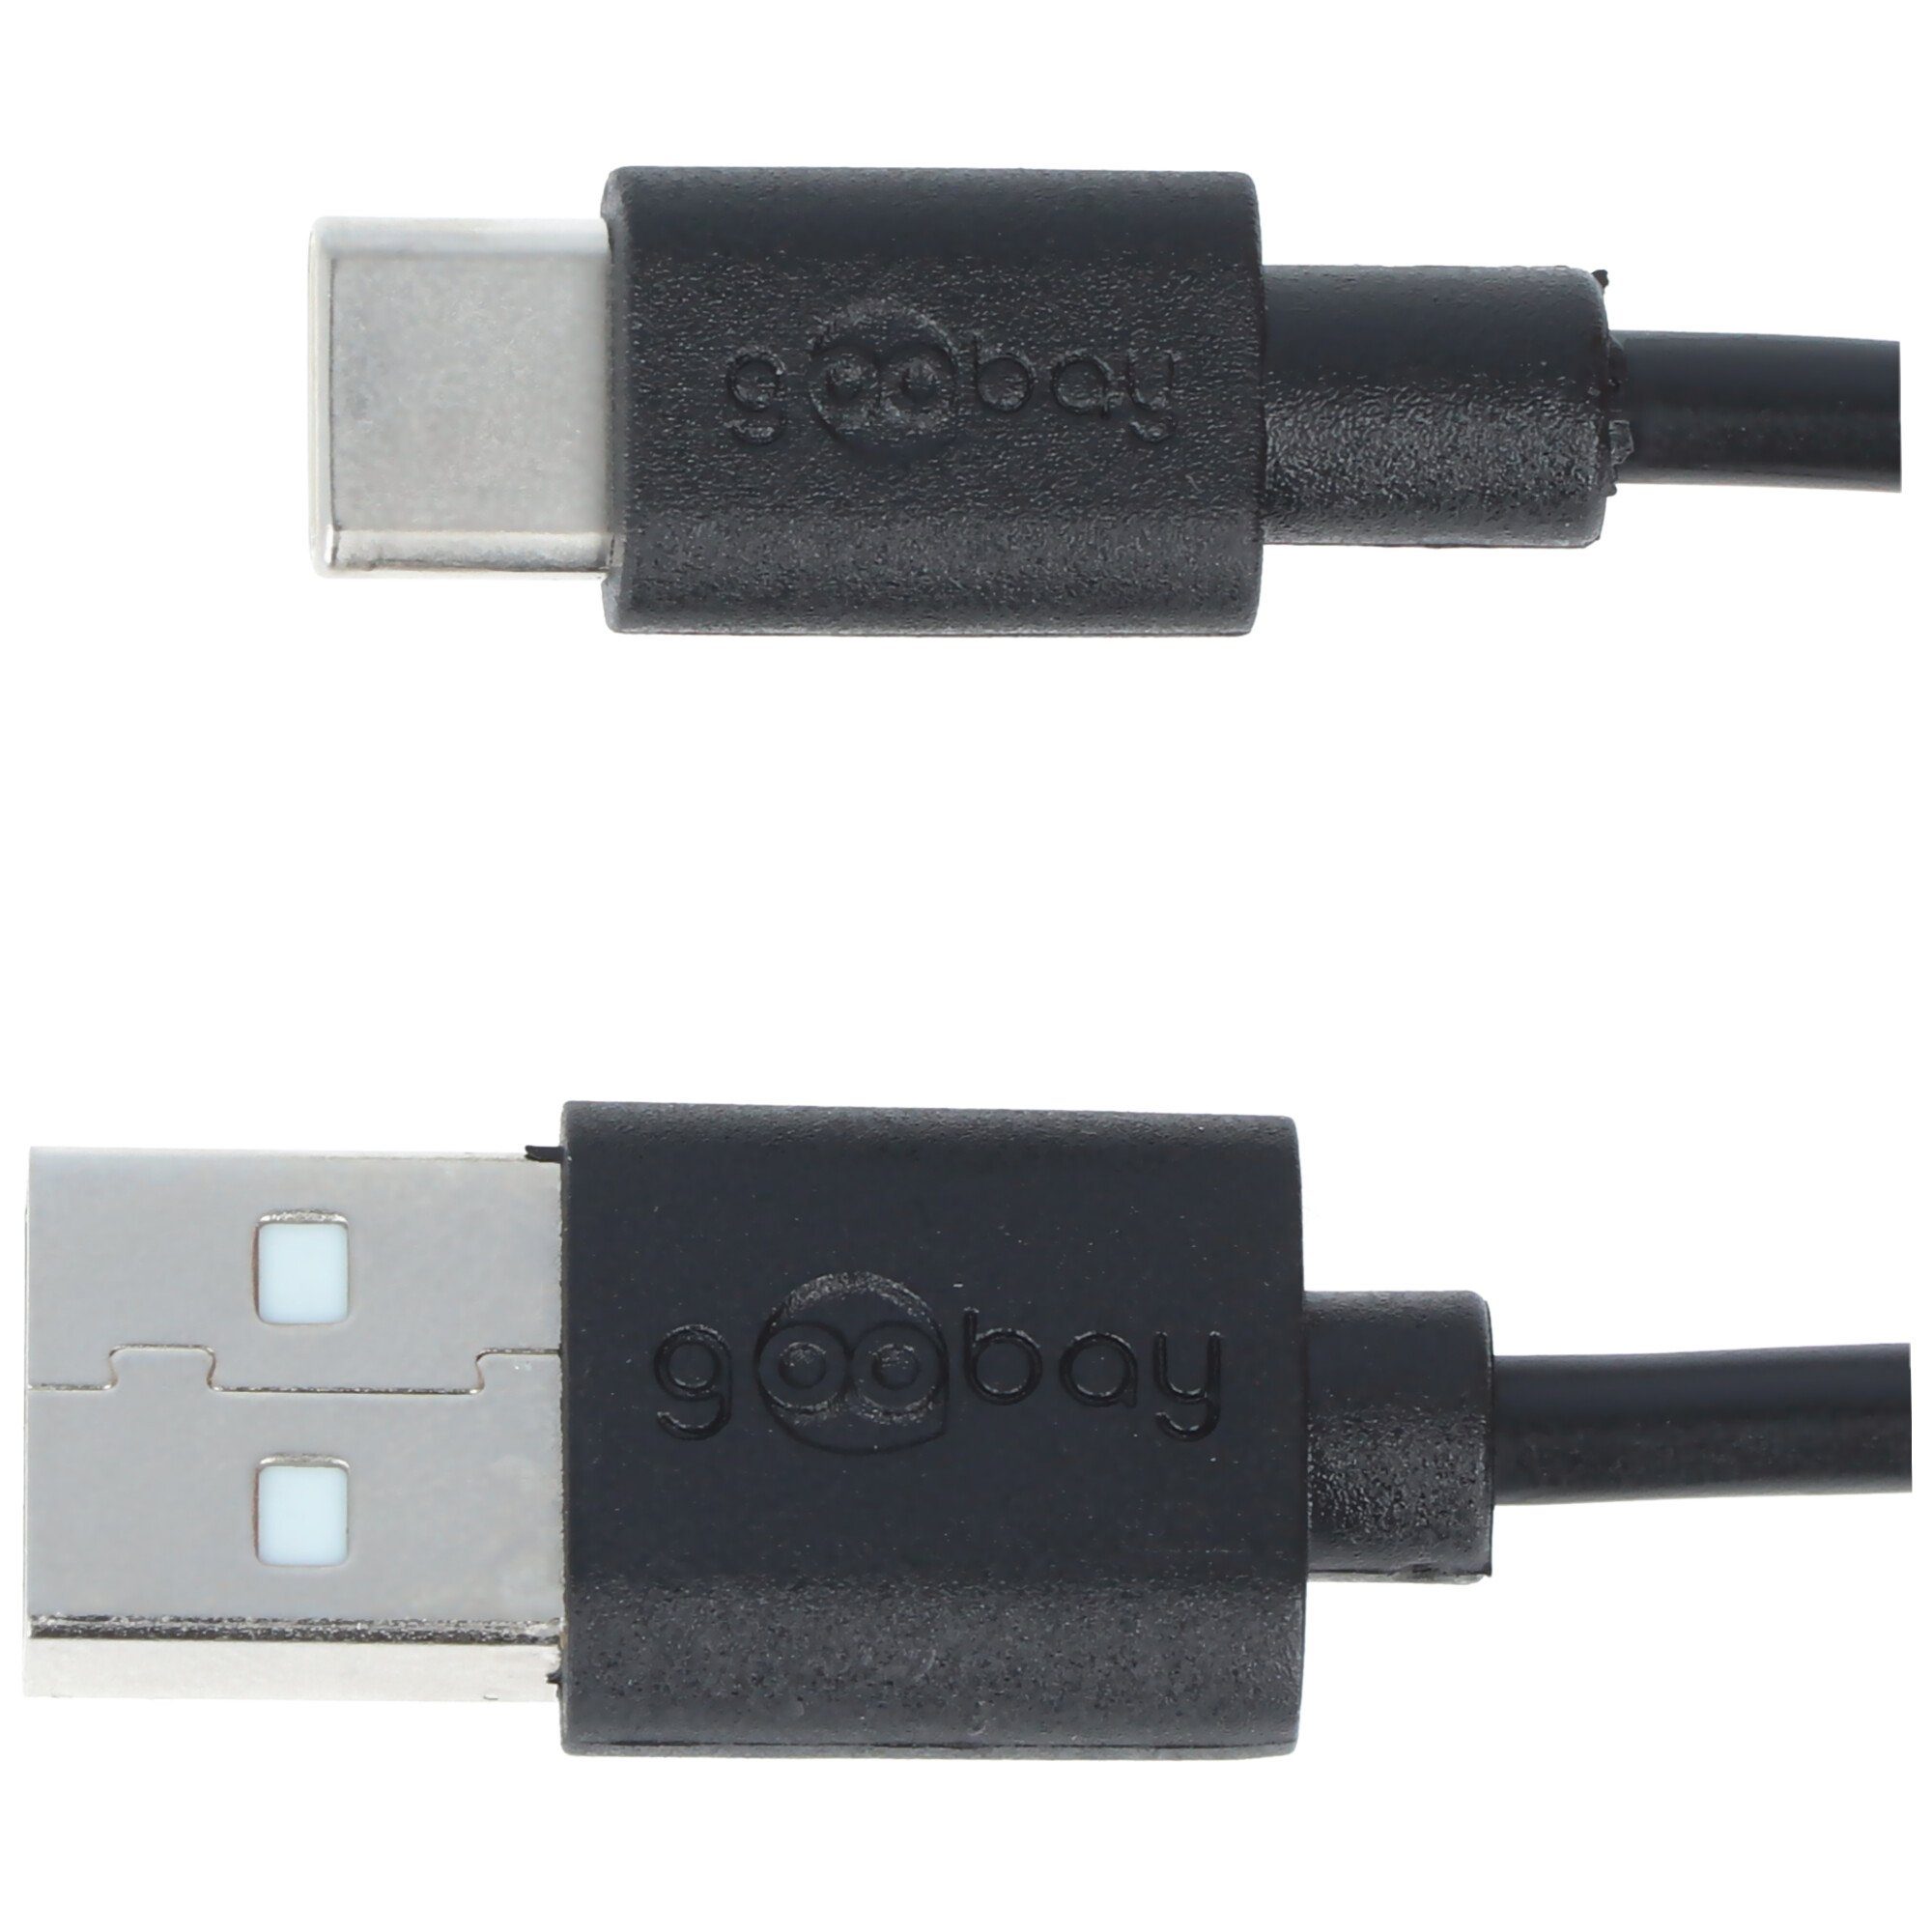 Lade- für USB-C alle mit Ansch Akku-Ladestation und Synchronisationskabel Geräte USB-C Goobay